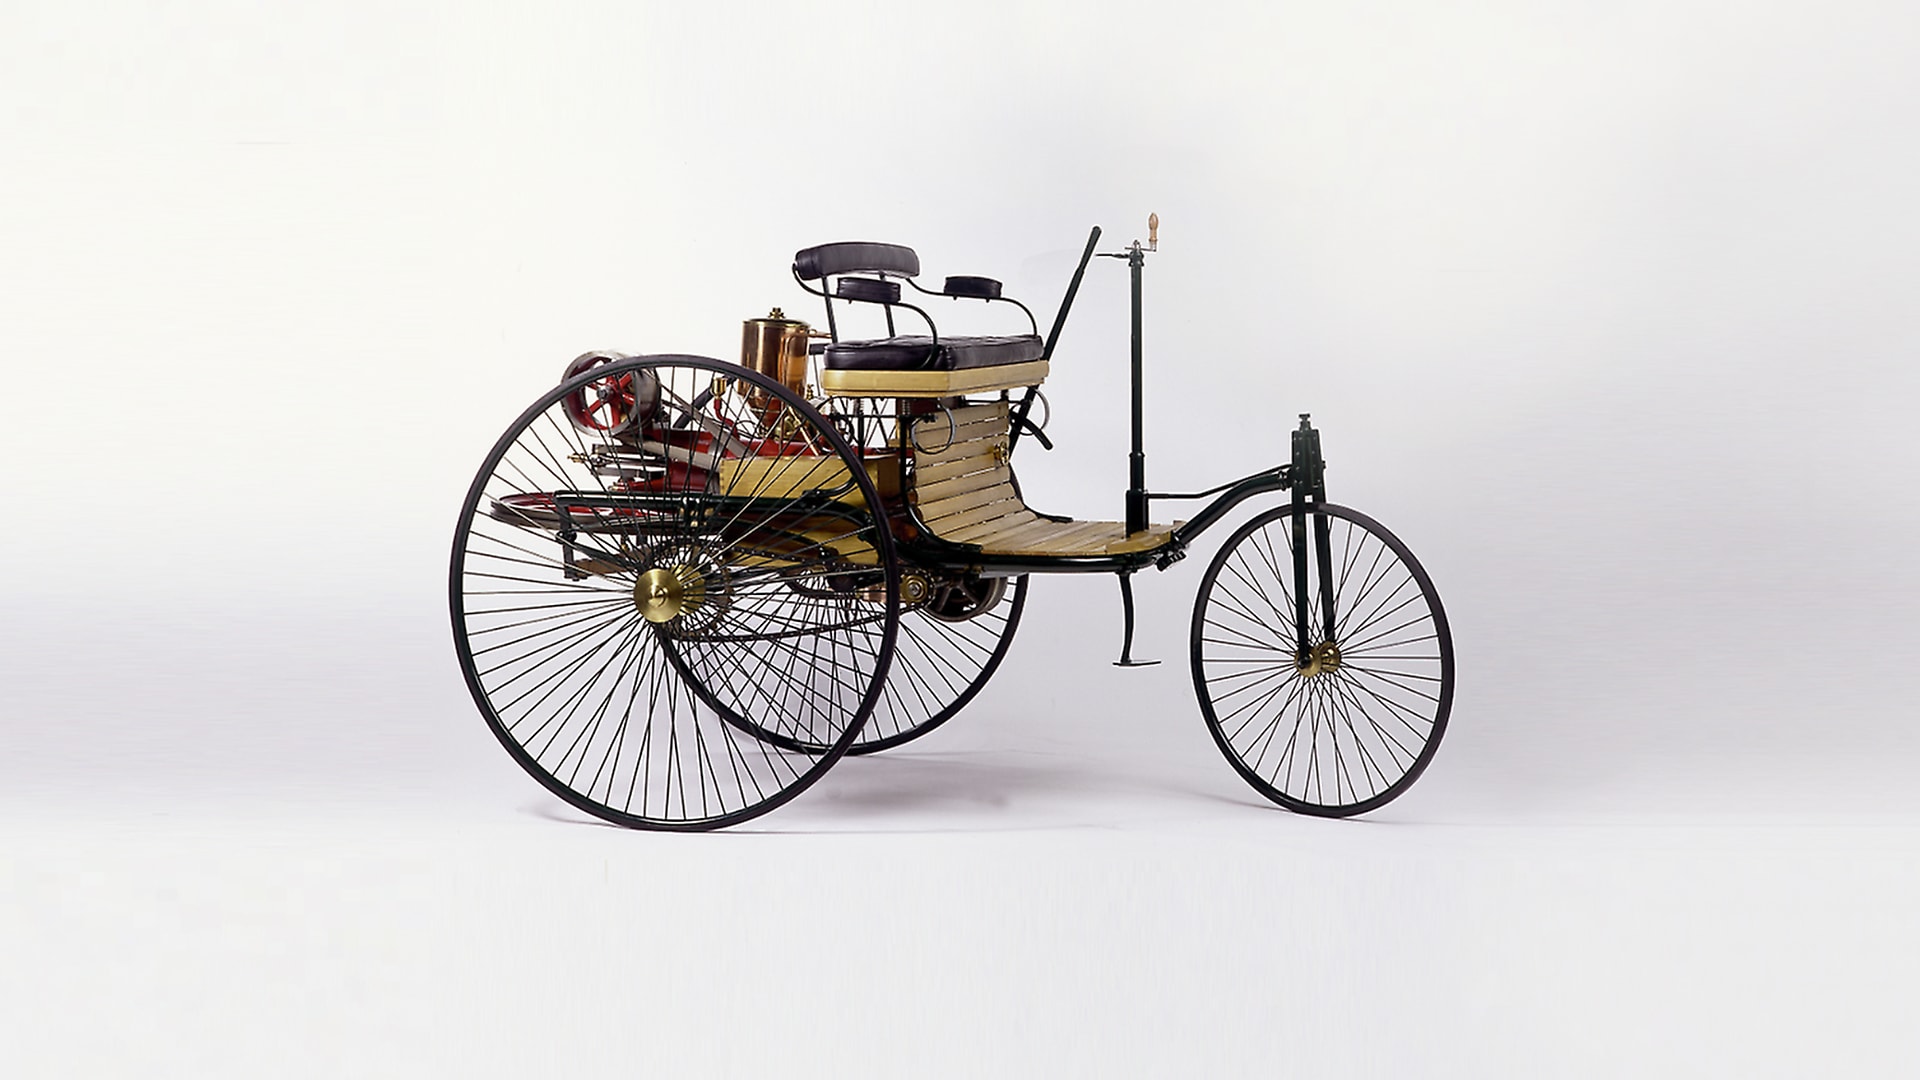 Der originale Benz Patent-Motorwagen aus dem Jahr 1886 – das erste Automobil der Welt.